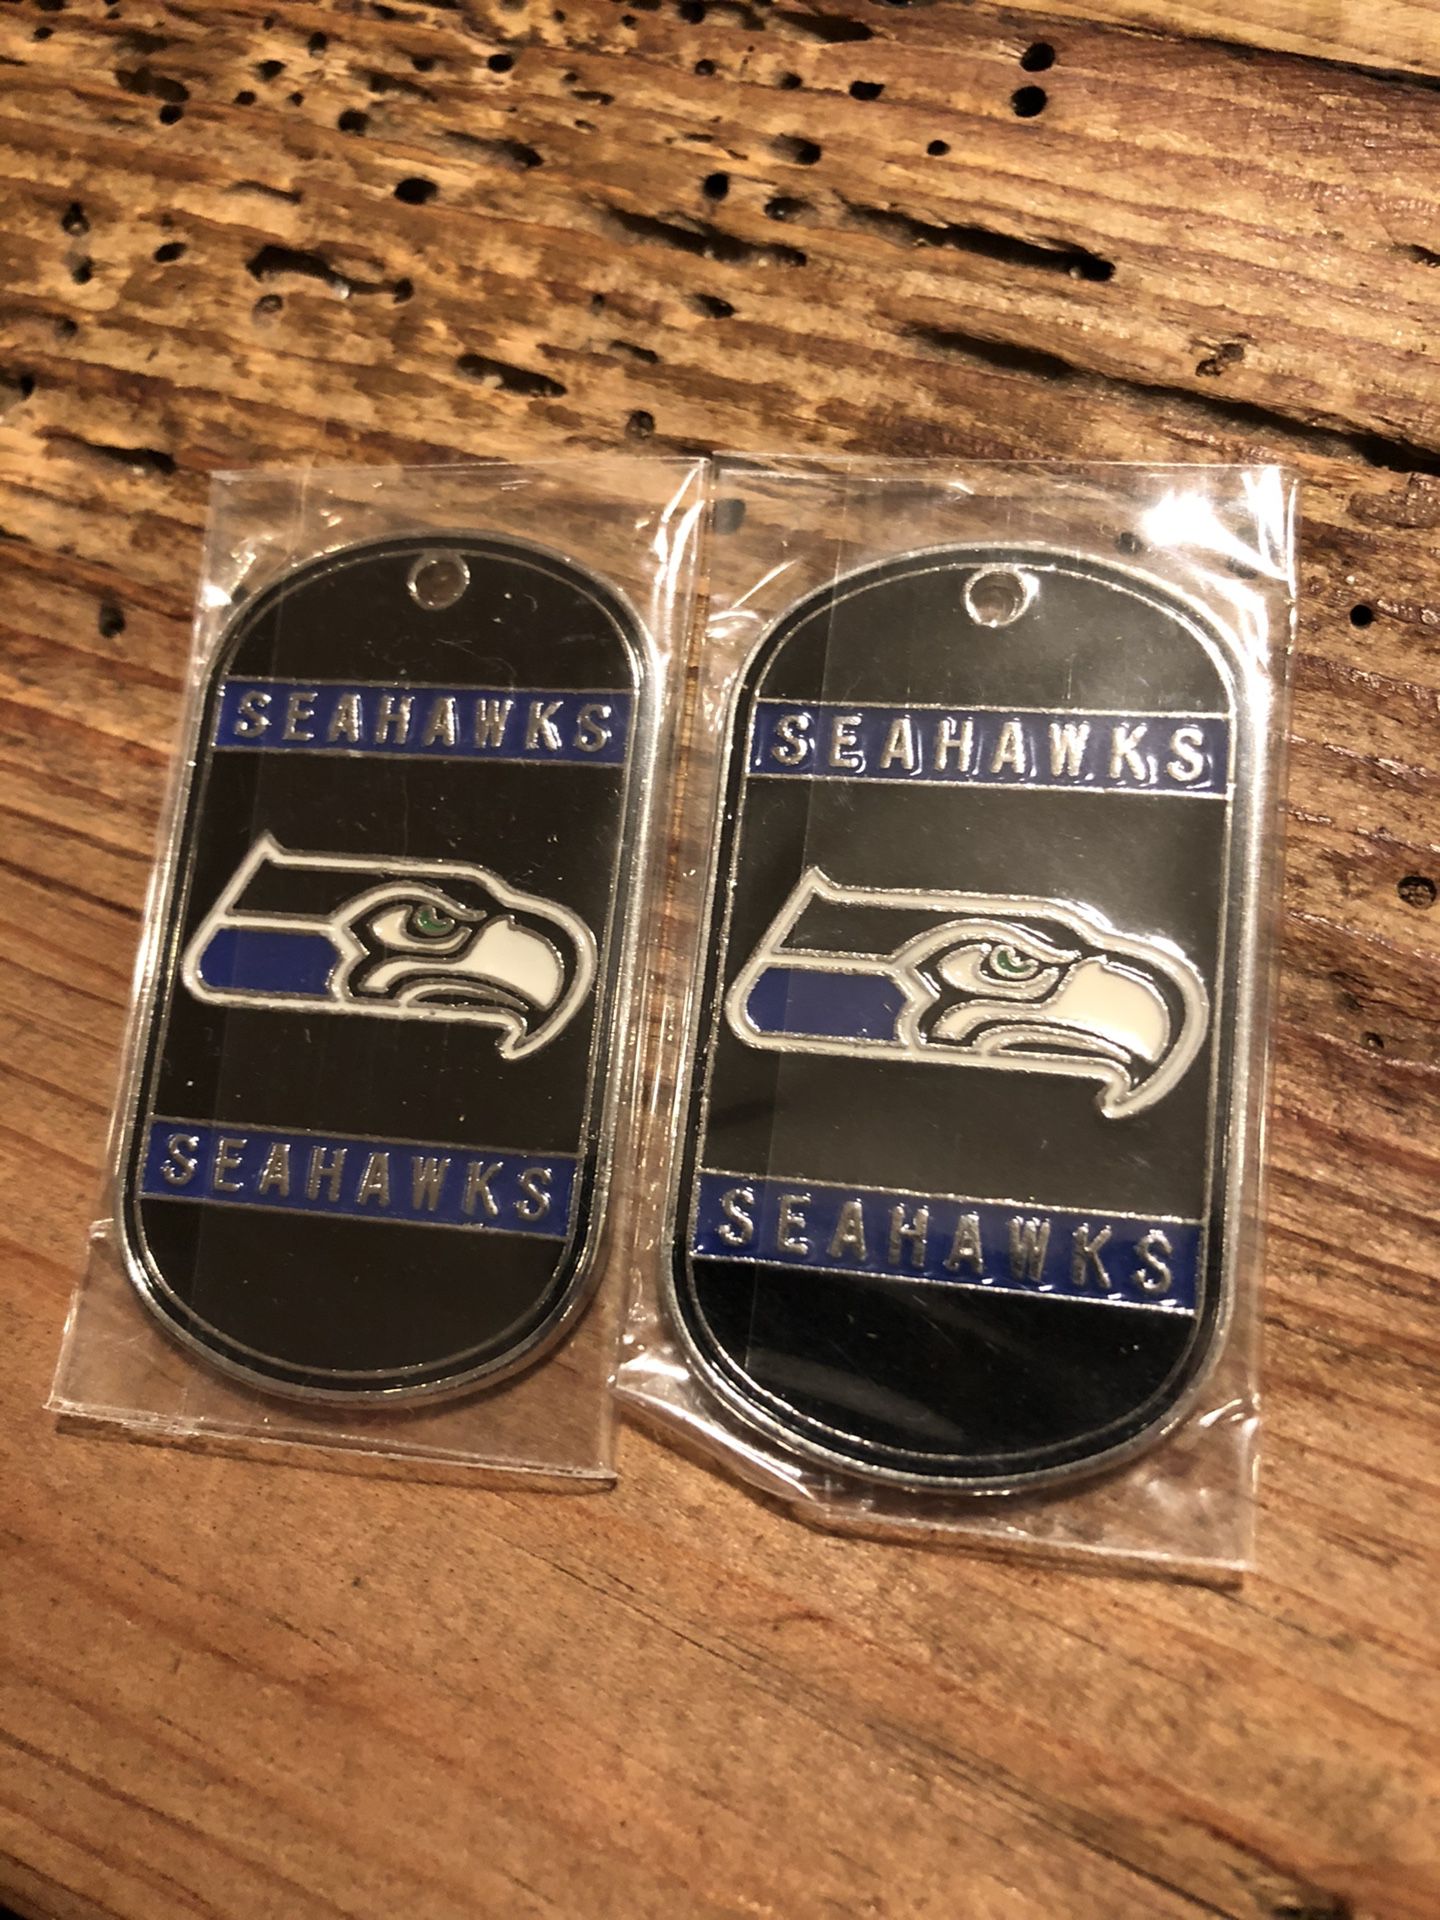 Seahawks jewelry charms